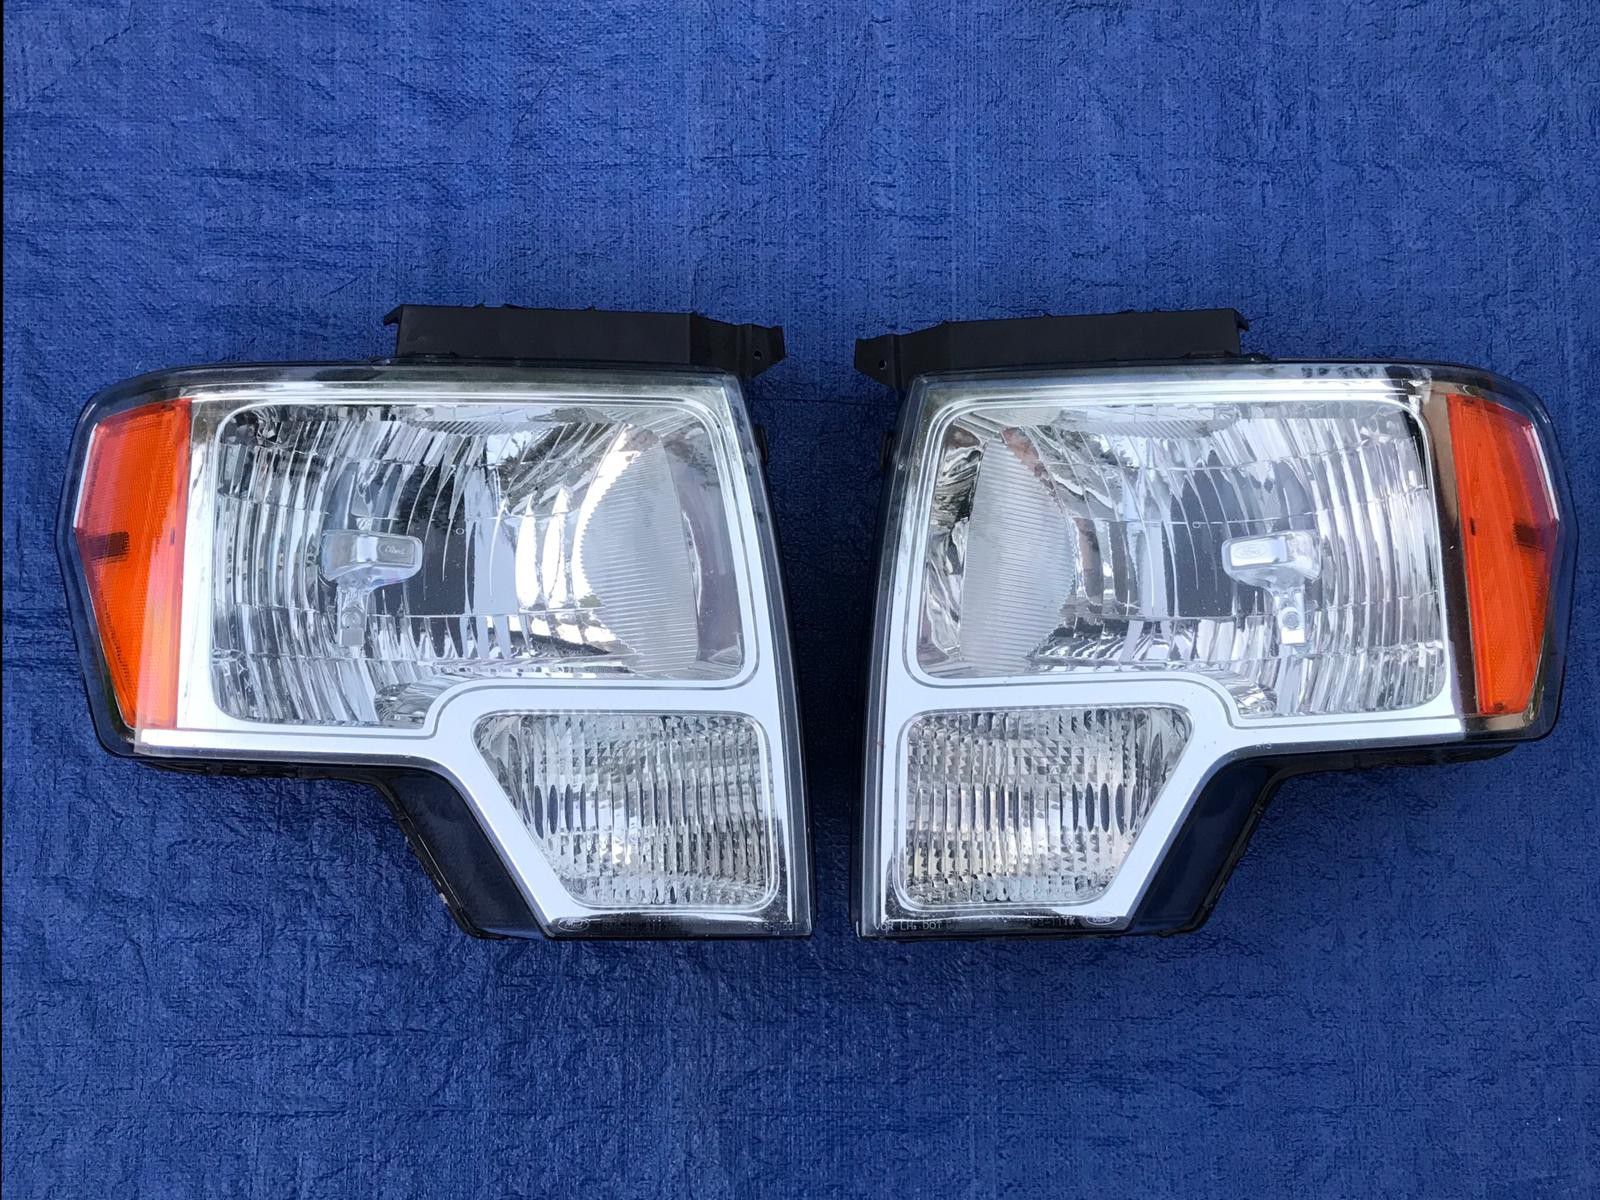 Ford F150 headlights